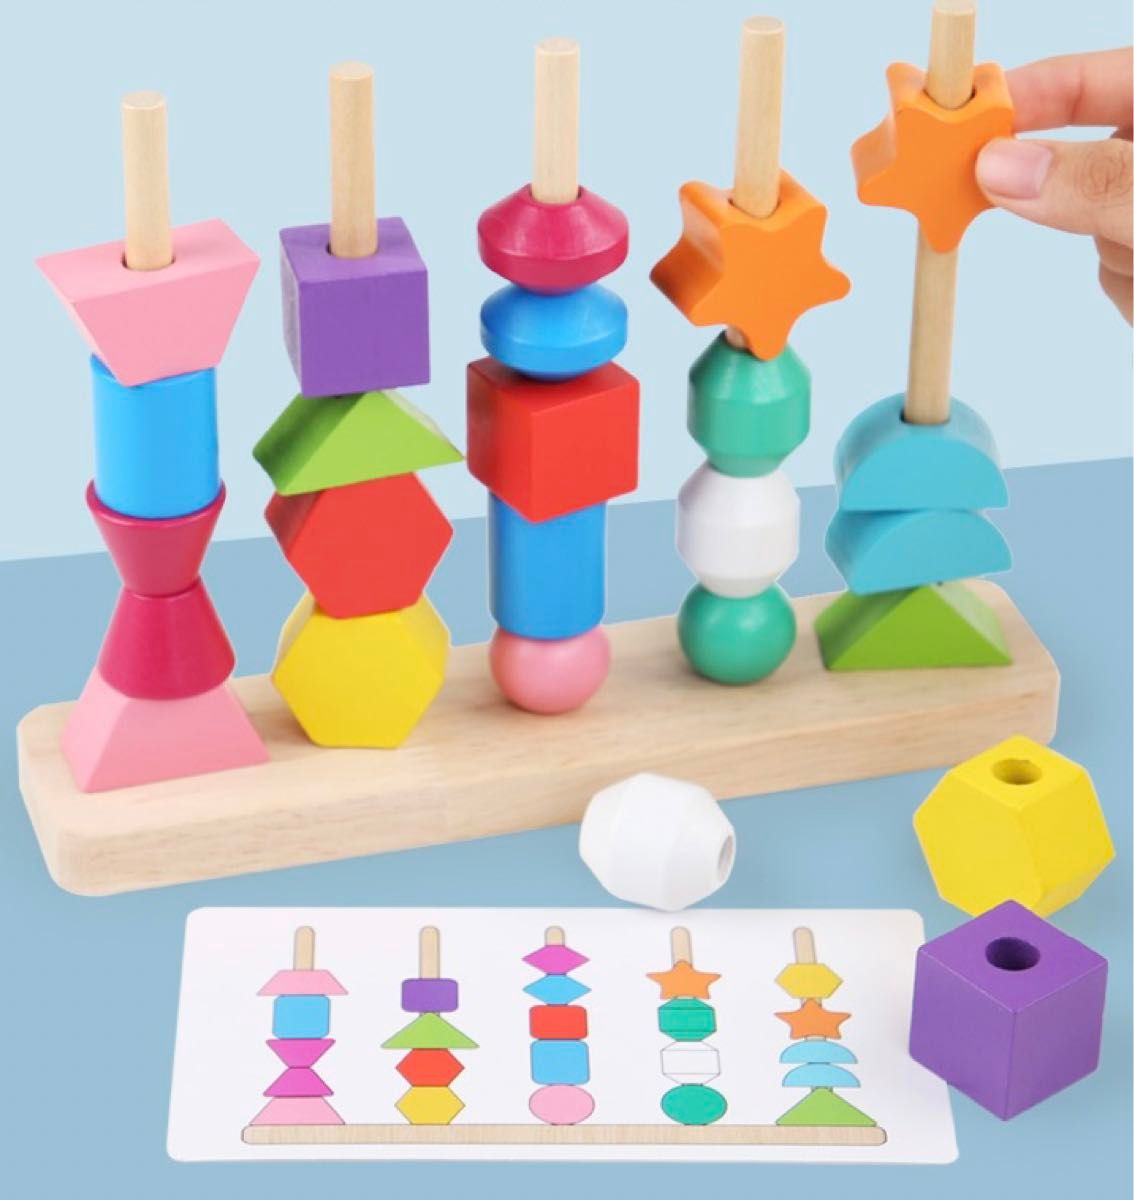 ひも通し 子ども  積み木 つみき おもちゃ 木製 モンテッソーリ 知育玩具